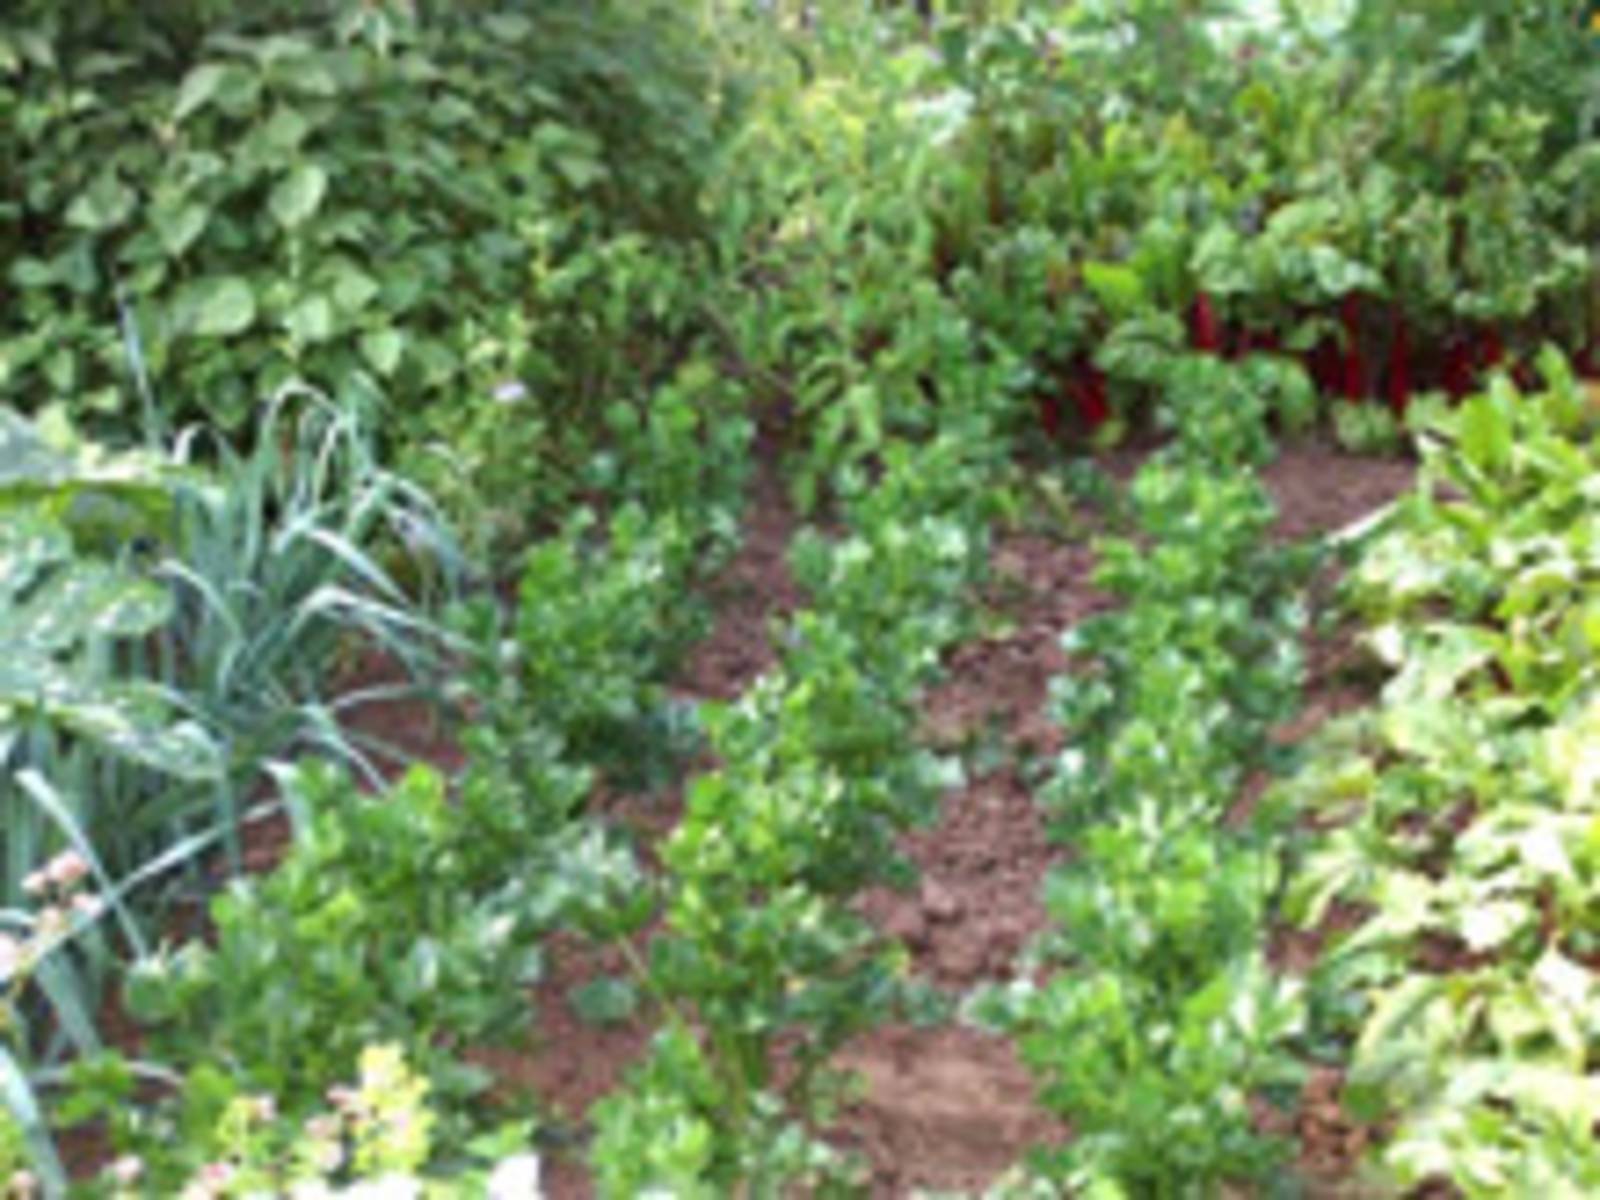 Mischkultur im Kleingarten: Salatpflanzen, Kohl, Zwiebeln und anderes Gemüse im Beet